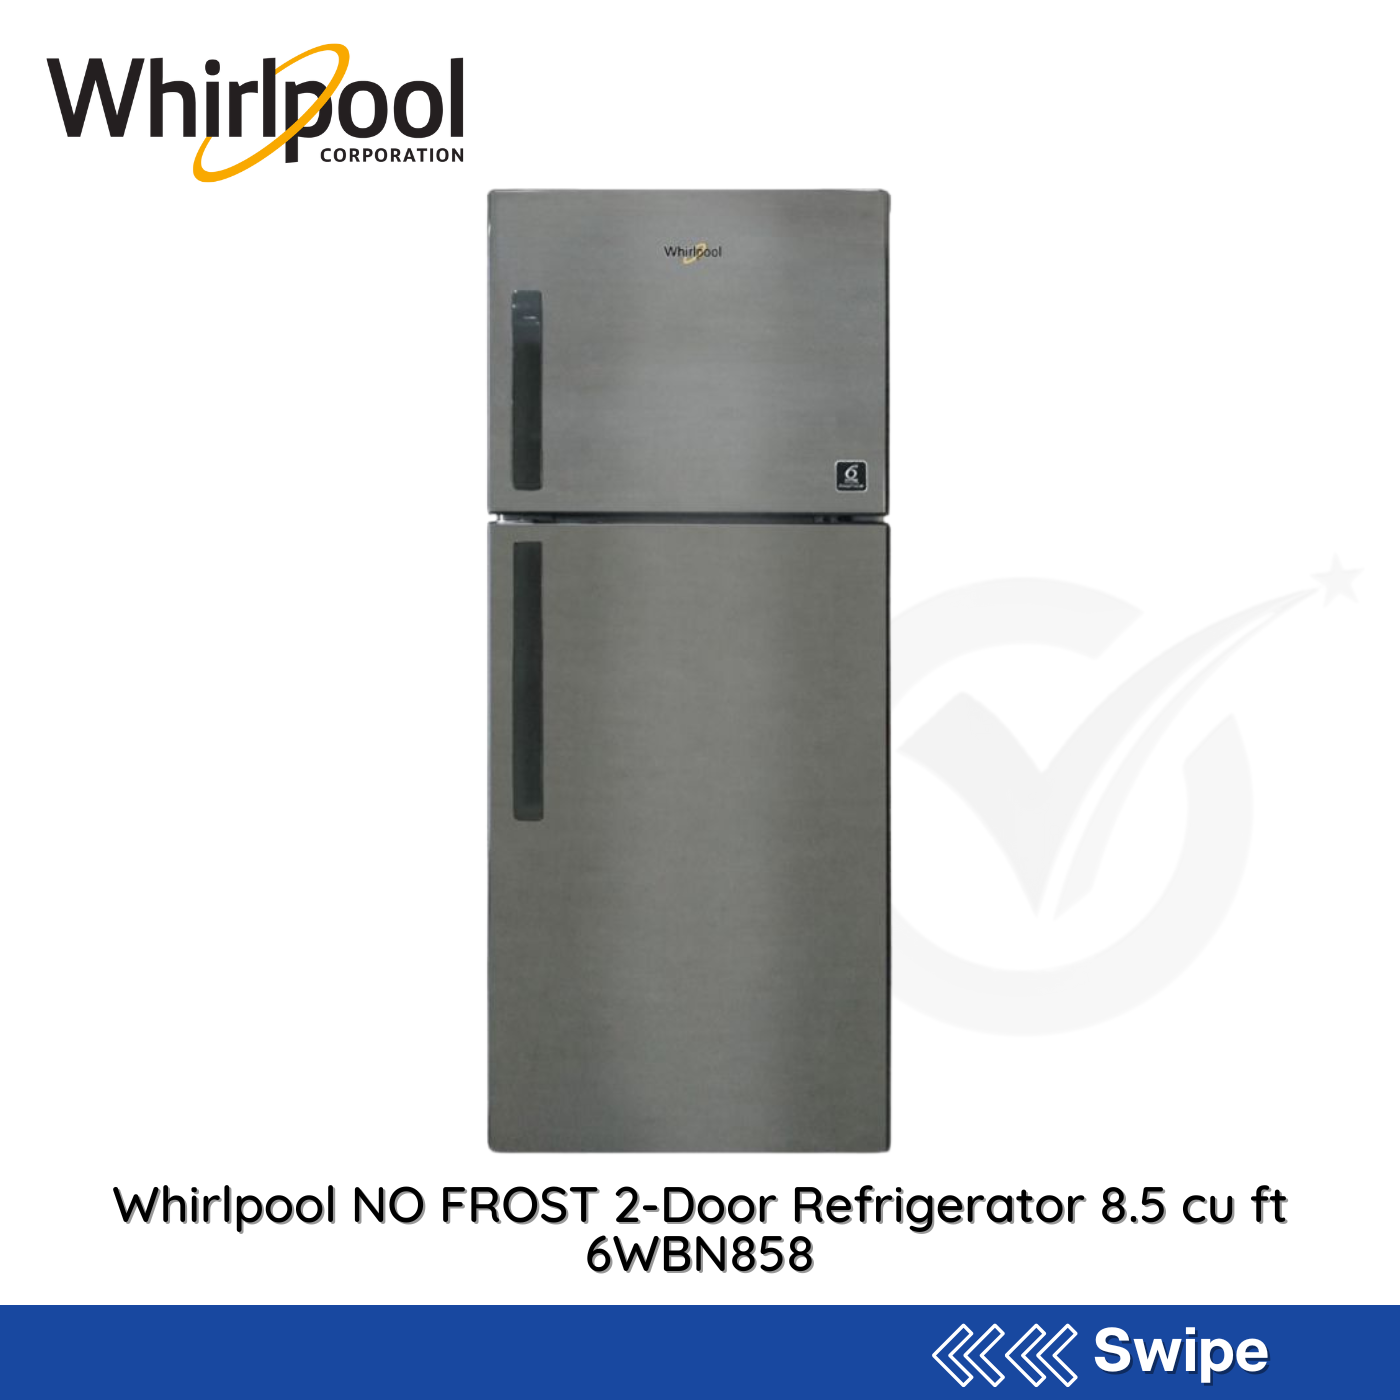 Whirlpool NO FROST 2-Door Refrigerator 8.5 cu ft 6WBN858